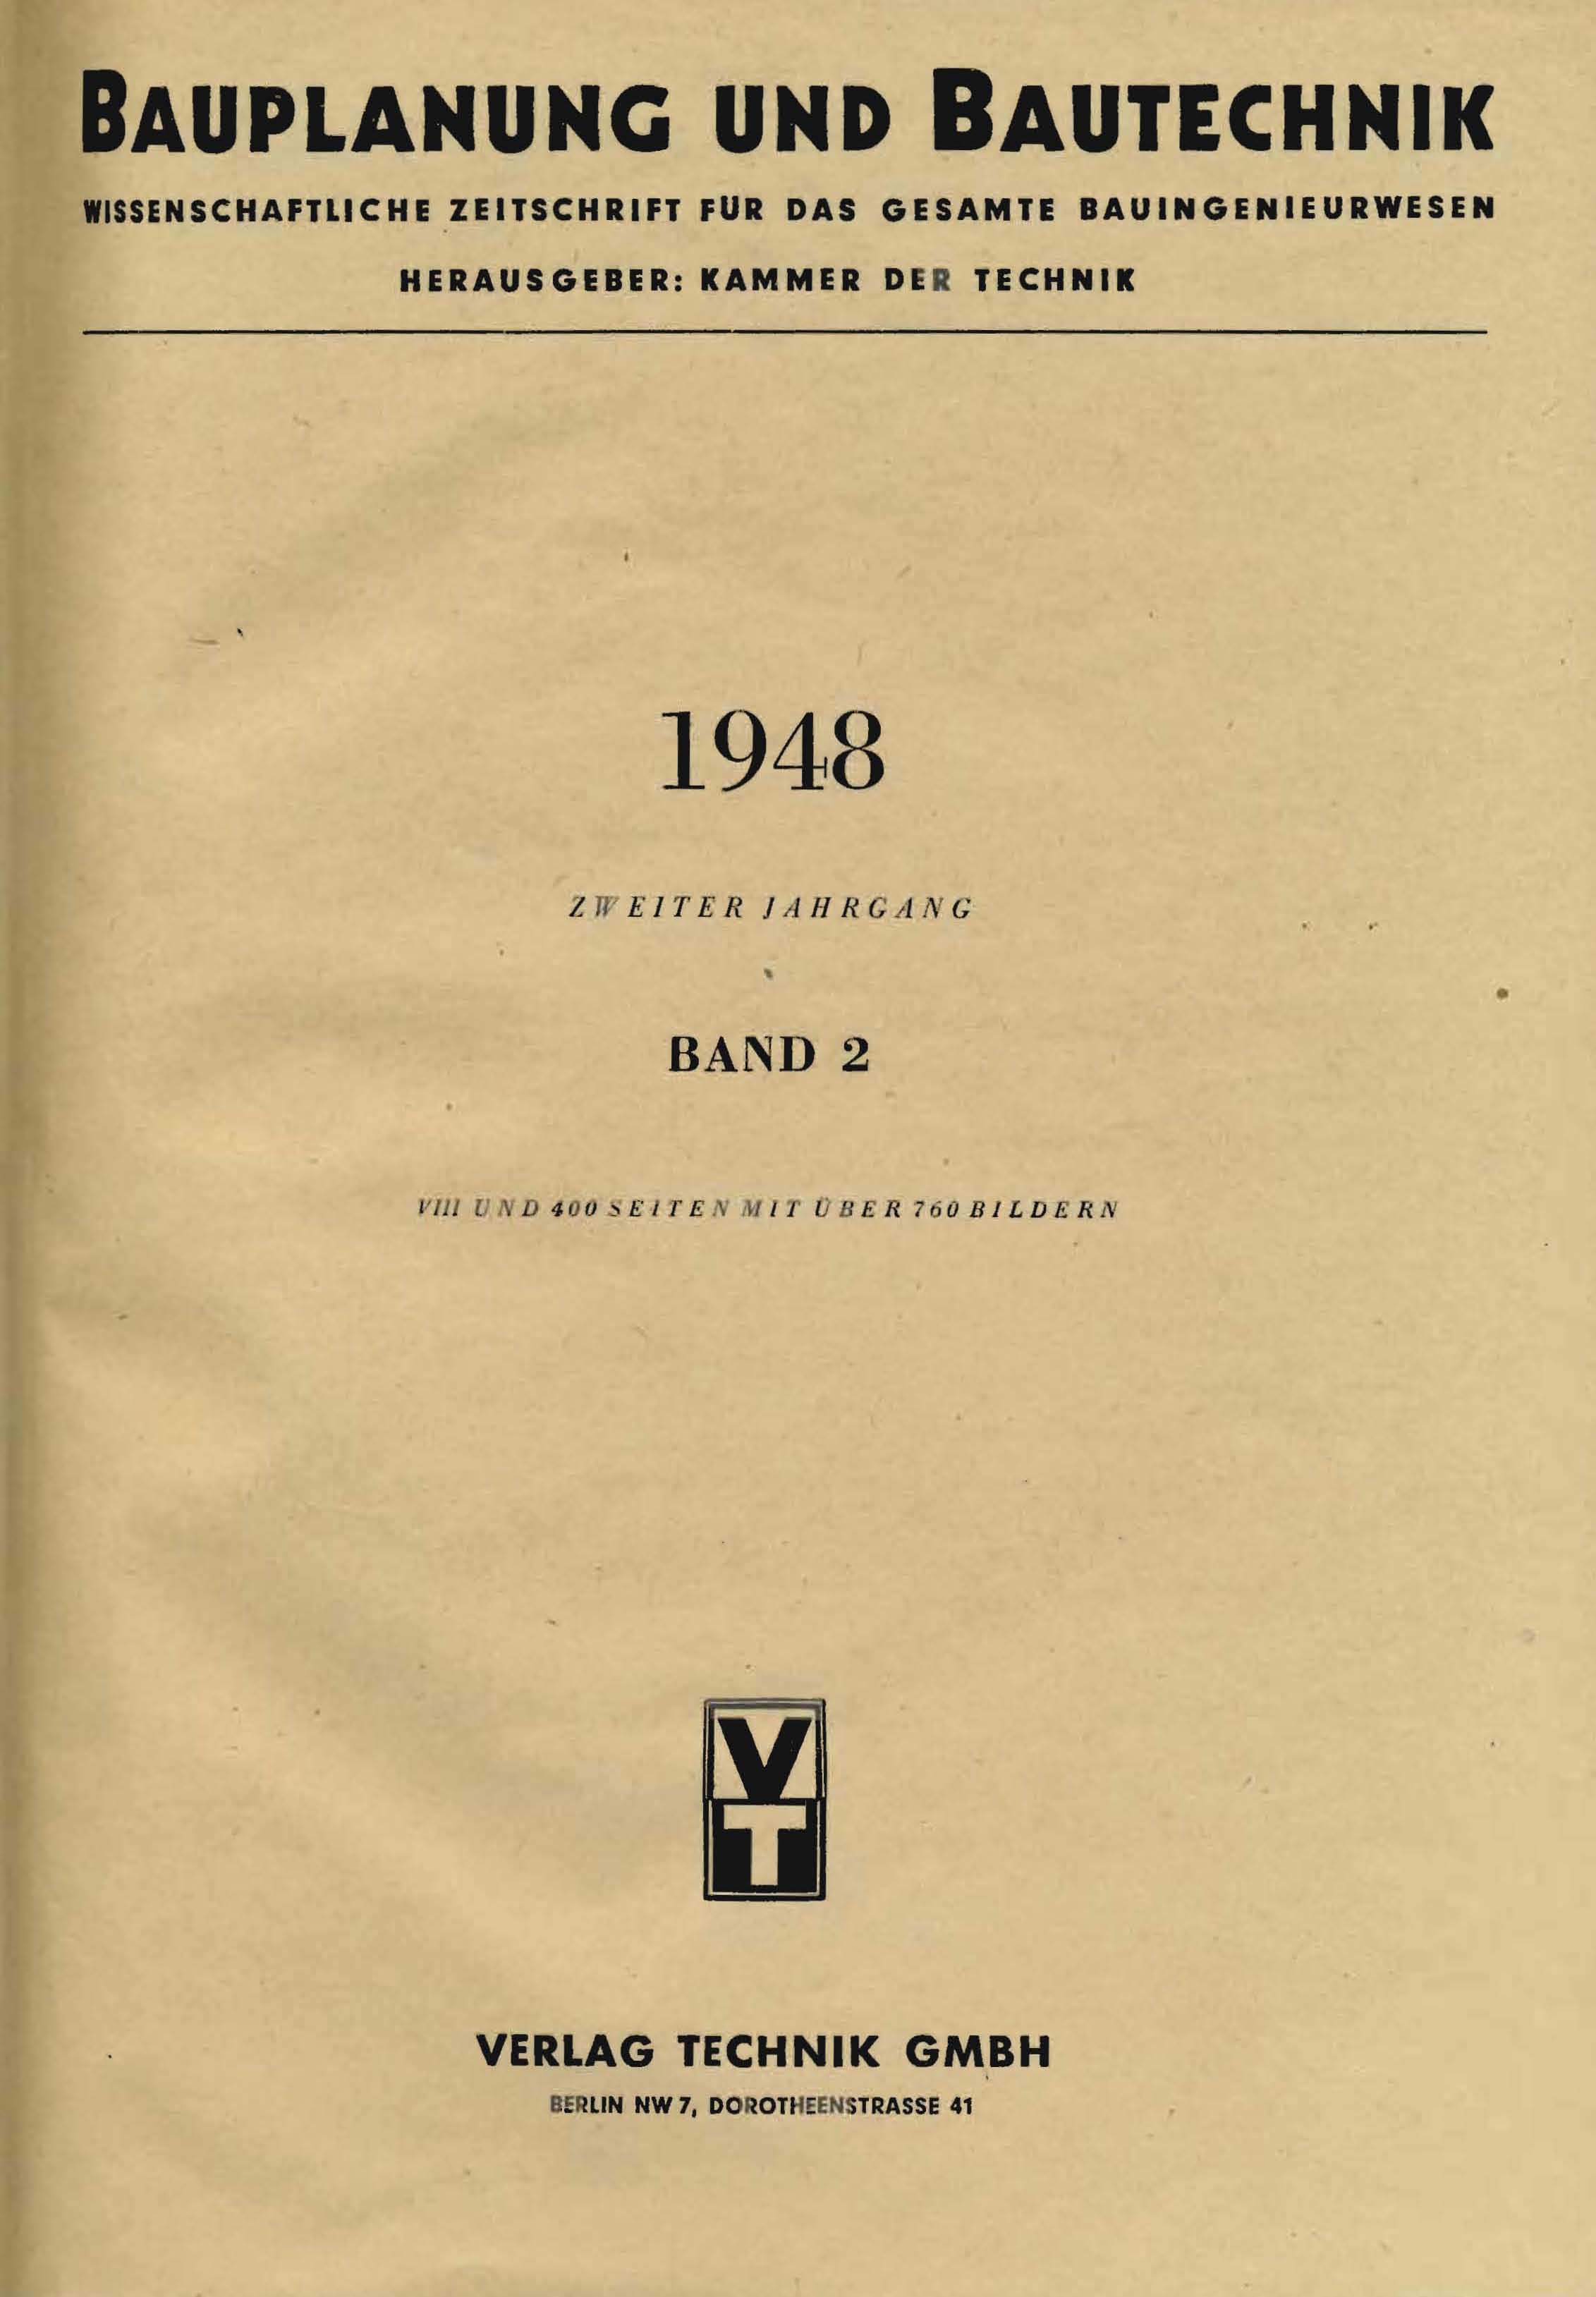 Bauplanung und Bautechnik, 1948, Zweiter Jahrgang, Band 2